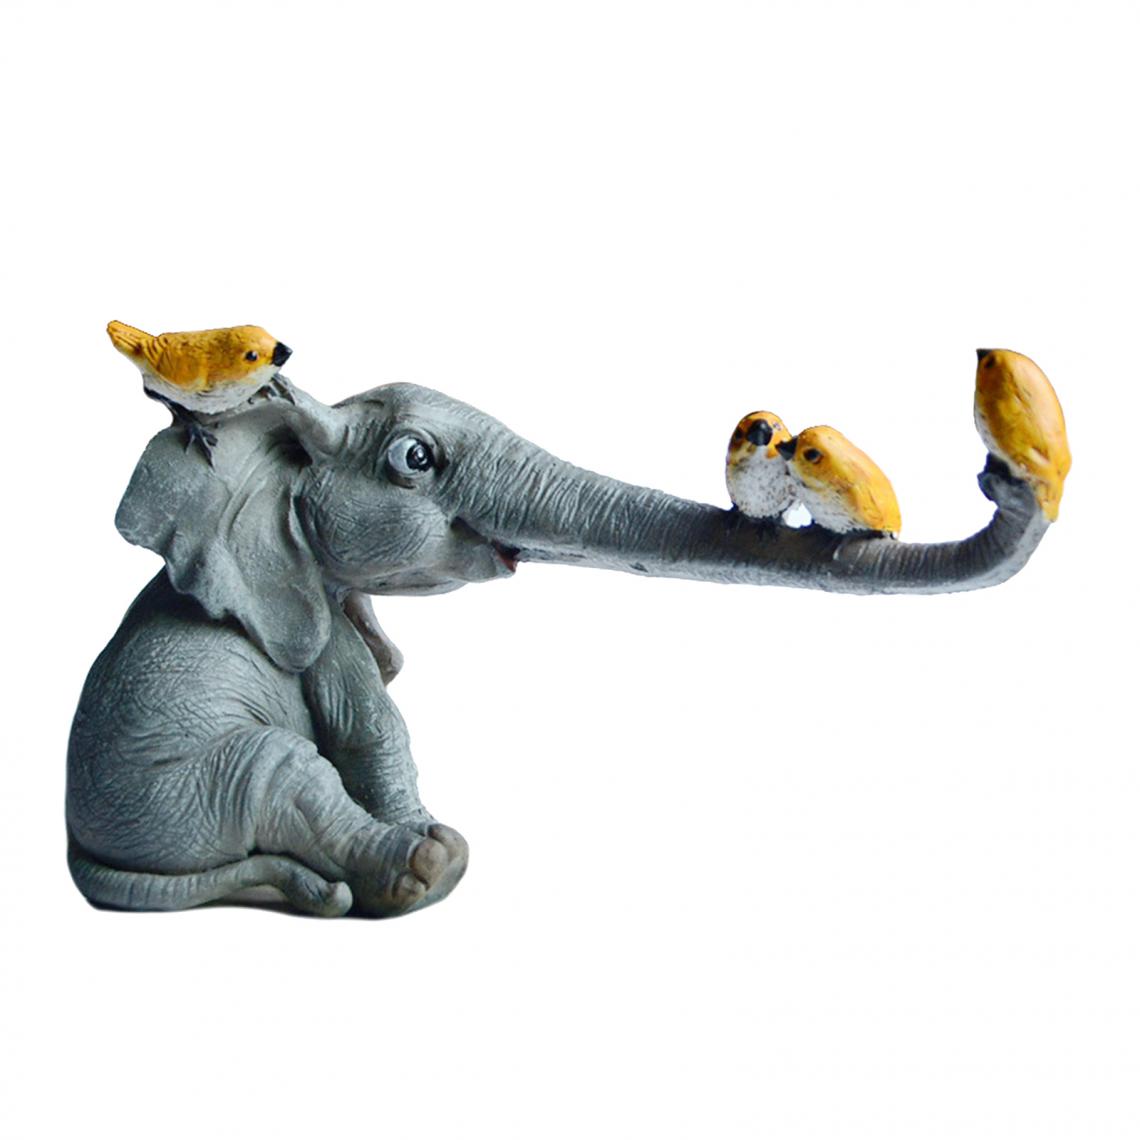 marque generique - Figurines D'éléphant Chanceux Ornements D'animaux De Jardin De Fées Décor De Table à La Maison A - Petite déco d'exterieur